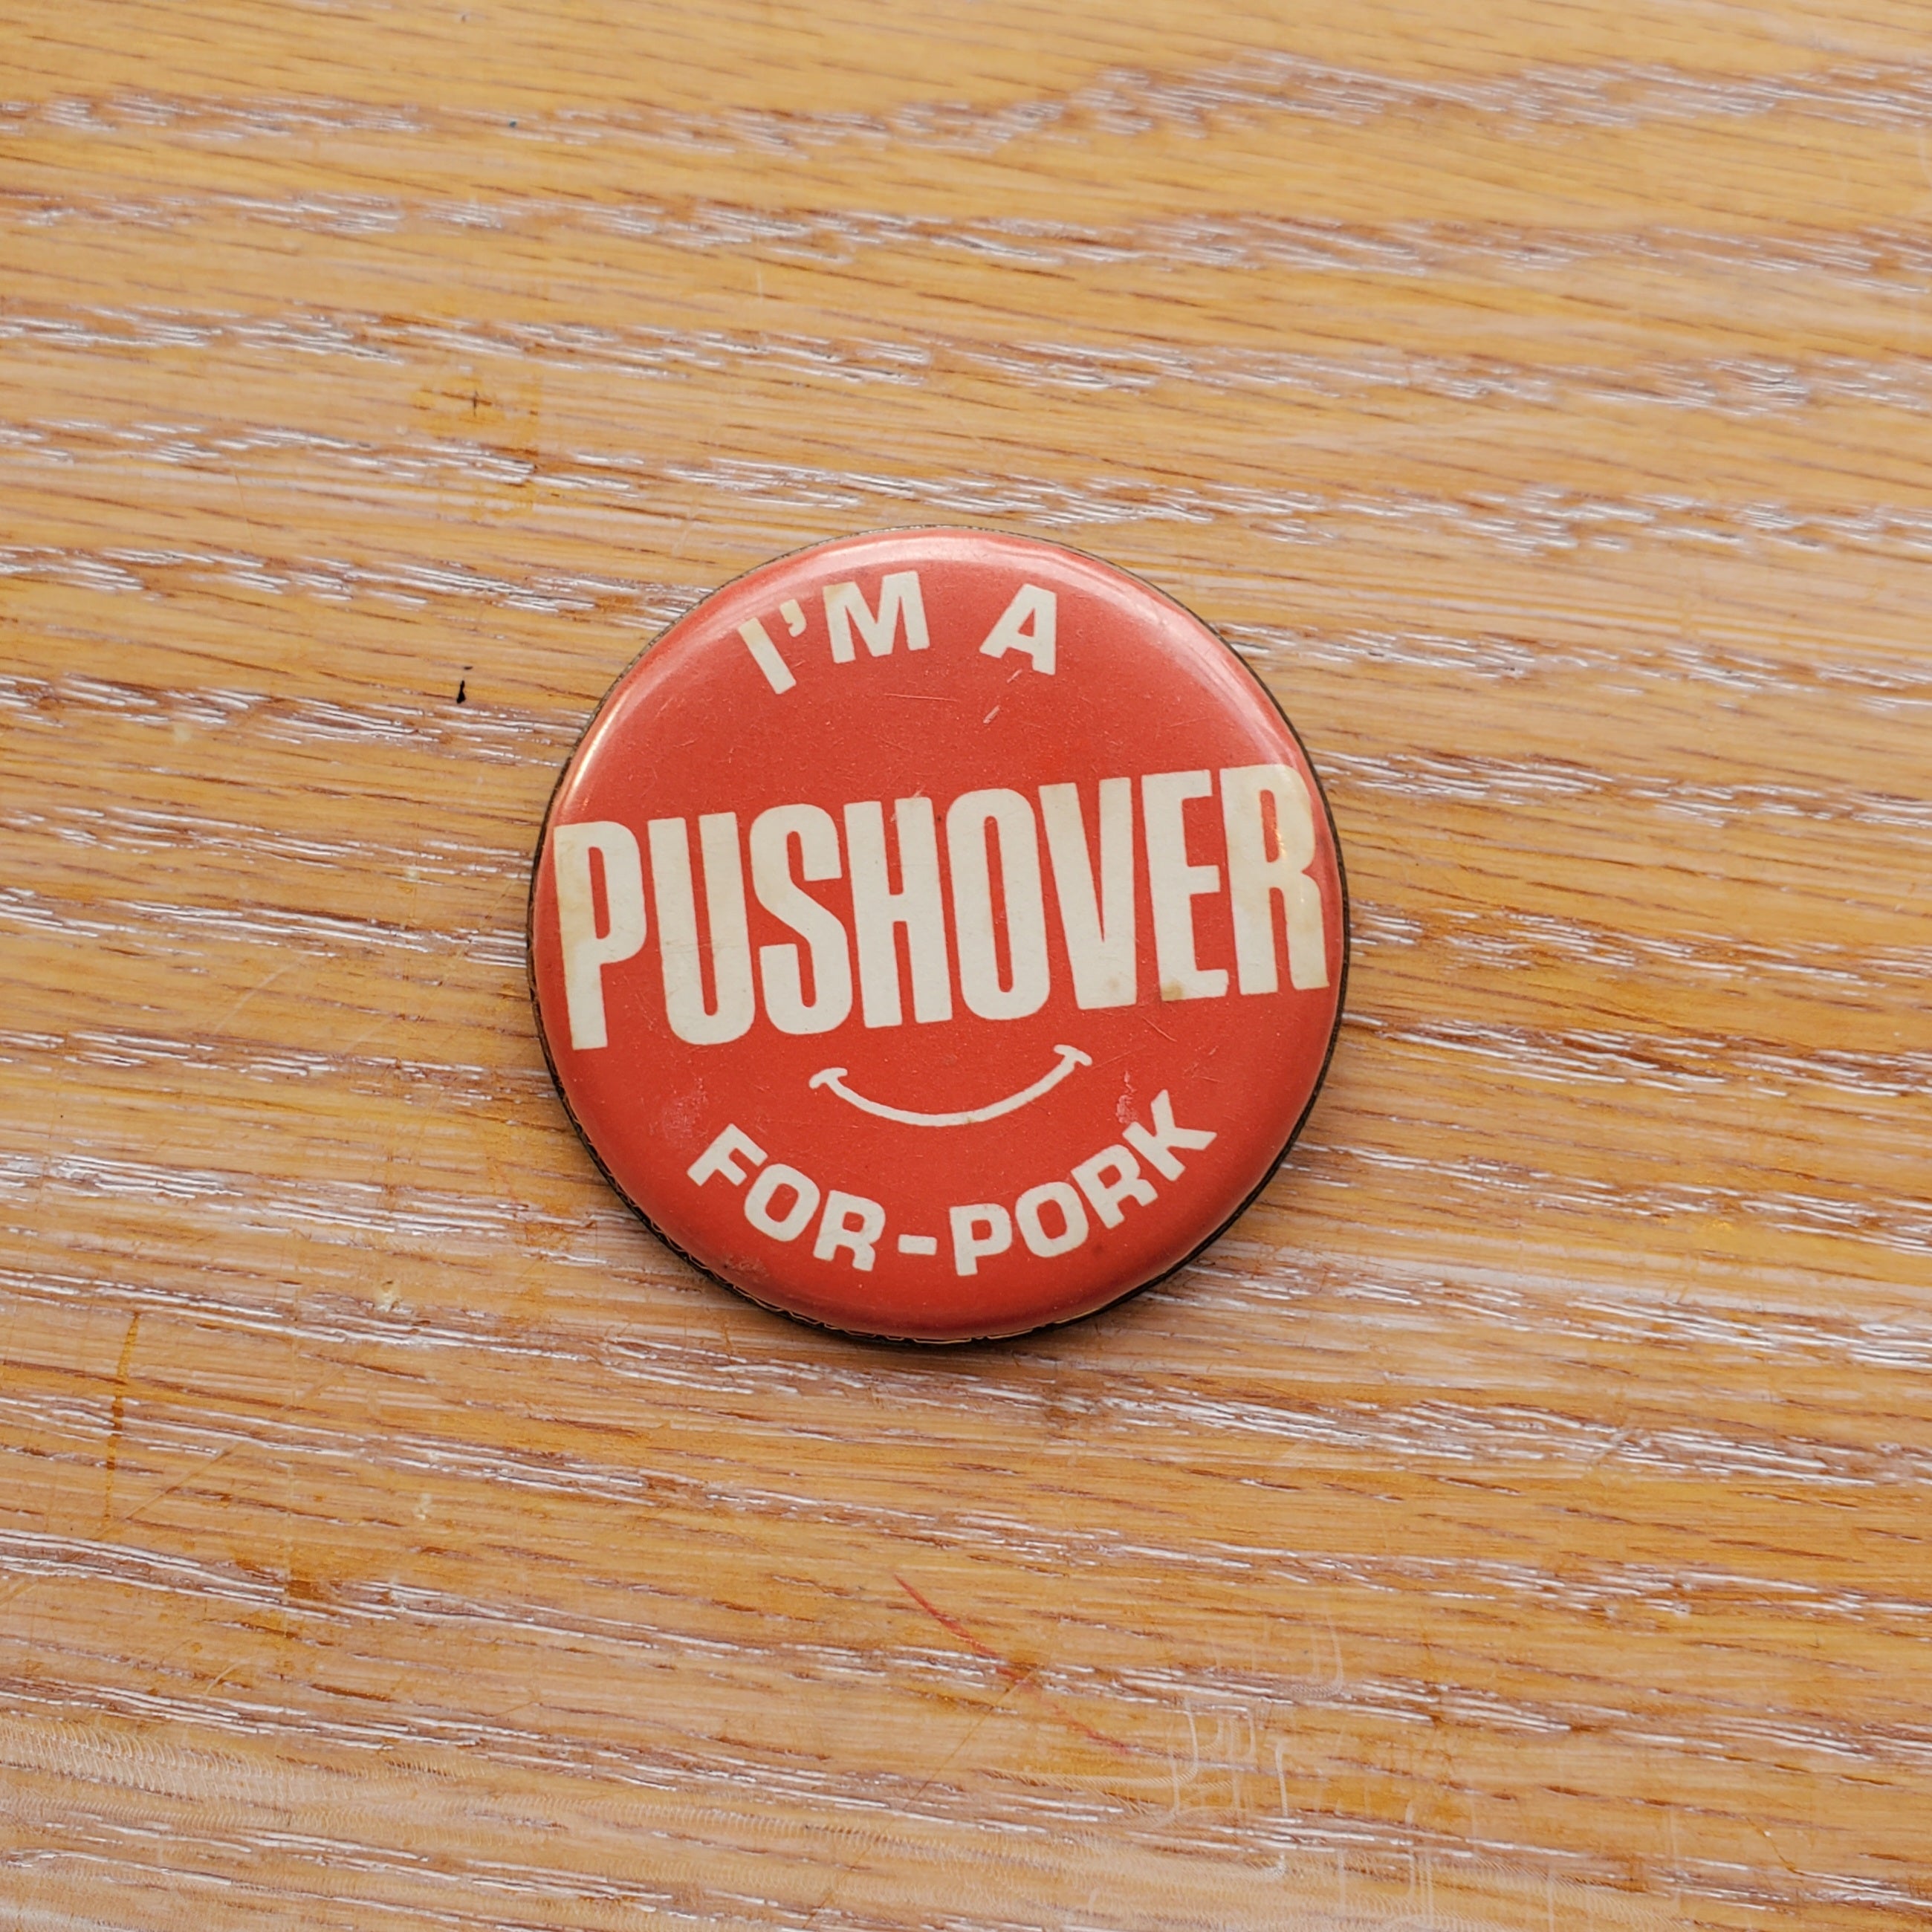 Pushover for Pork Vintage Pinback Button